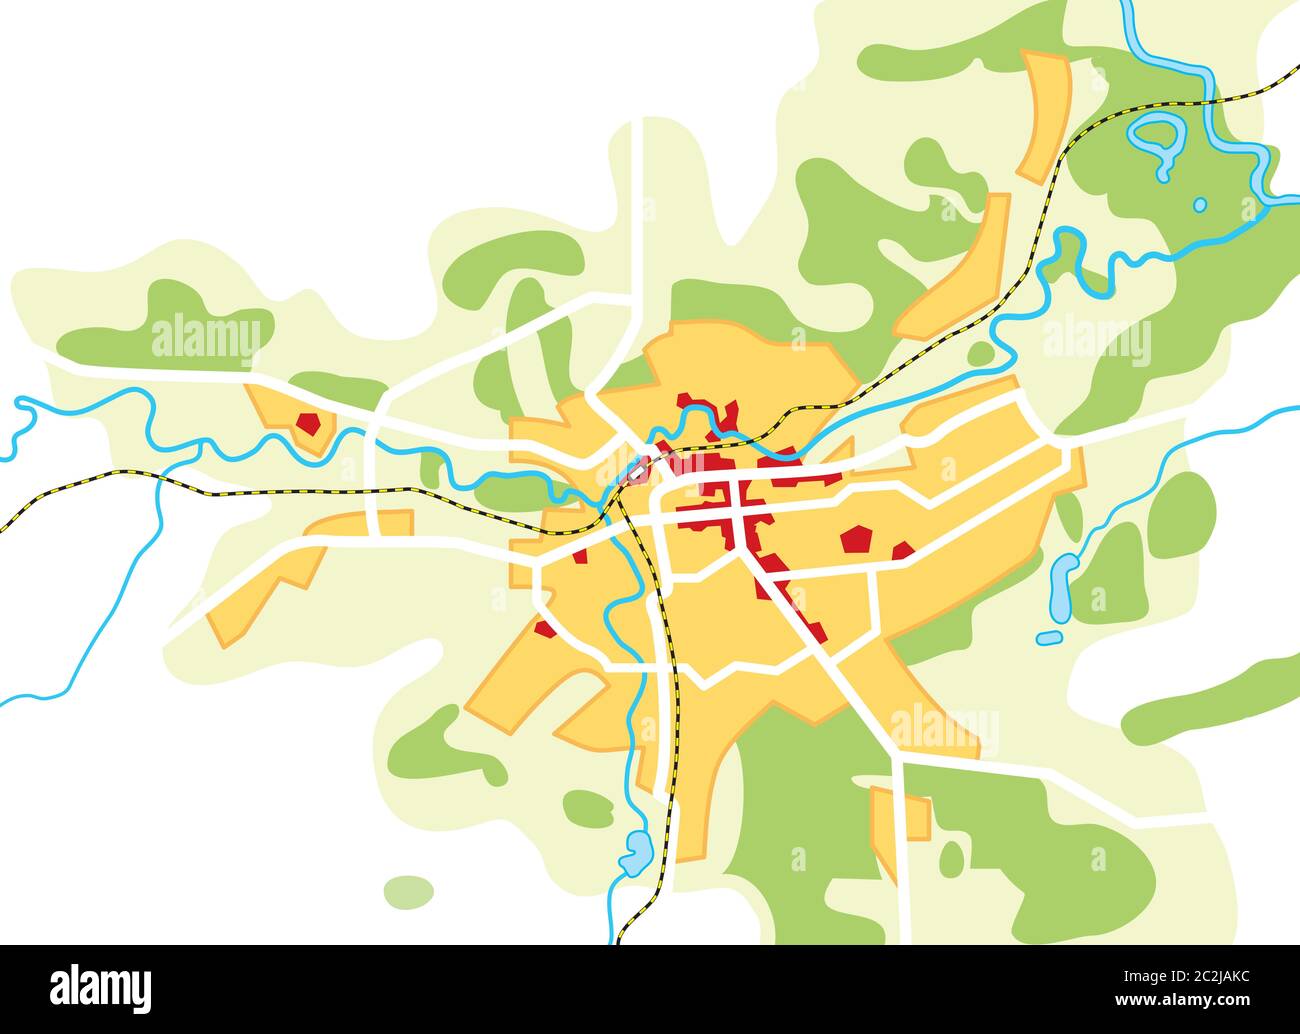 Karte der Stadt. Geographische Lage, Navigation Reiseführer, Route Urban Chart. Stockfoto